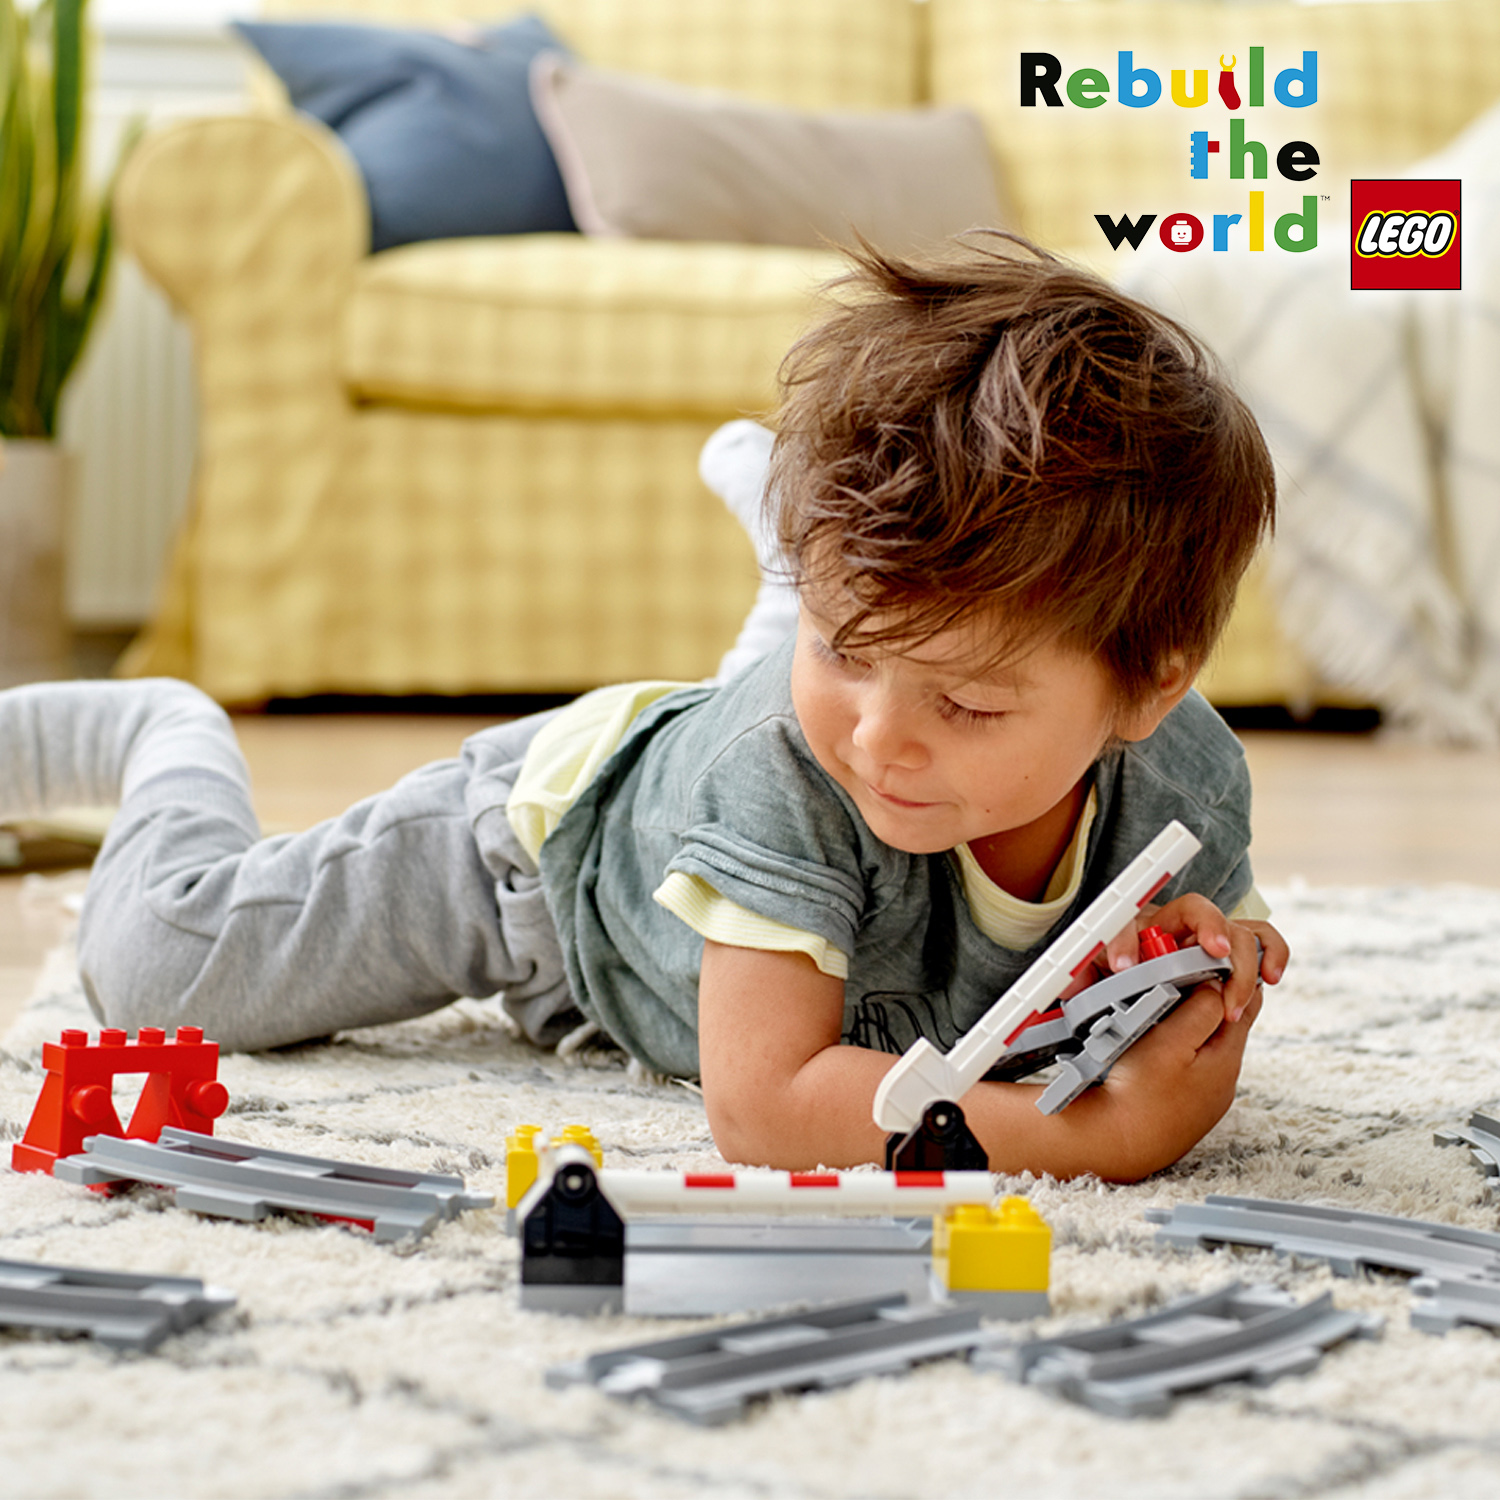 Lego duplo 10882 binari ferroviari, giochi per bambini in età prescolare con mattoncino sonoro, giocattoli educativi - LEGO DUPLO, Lego